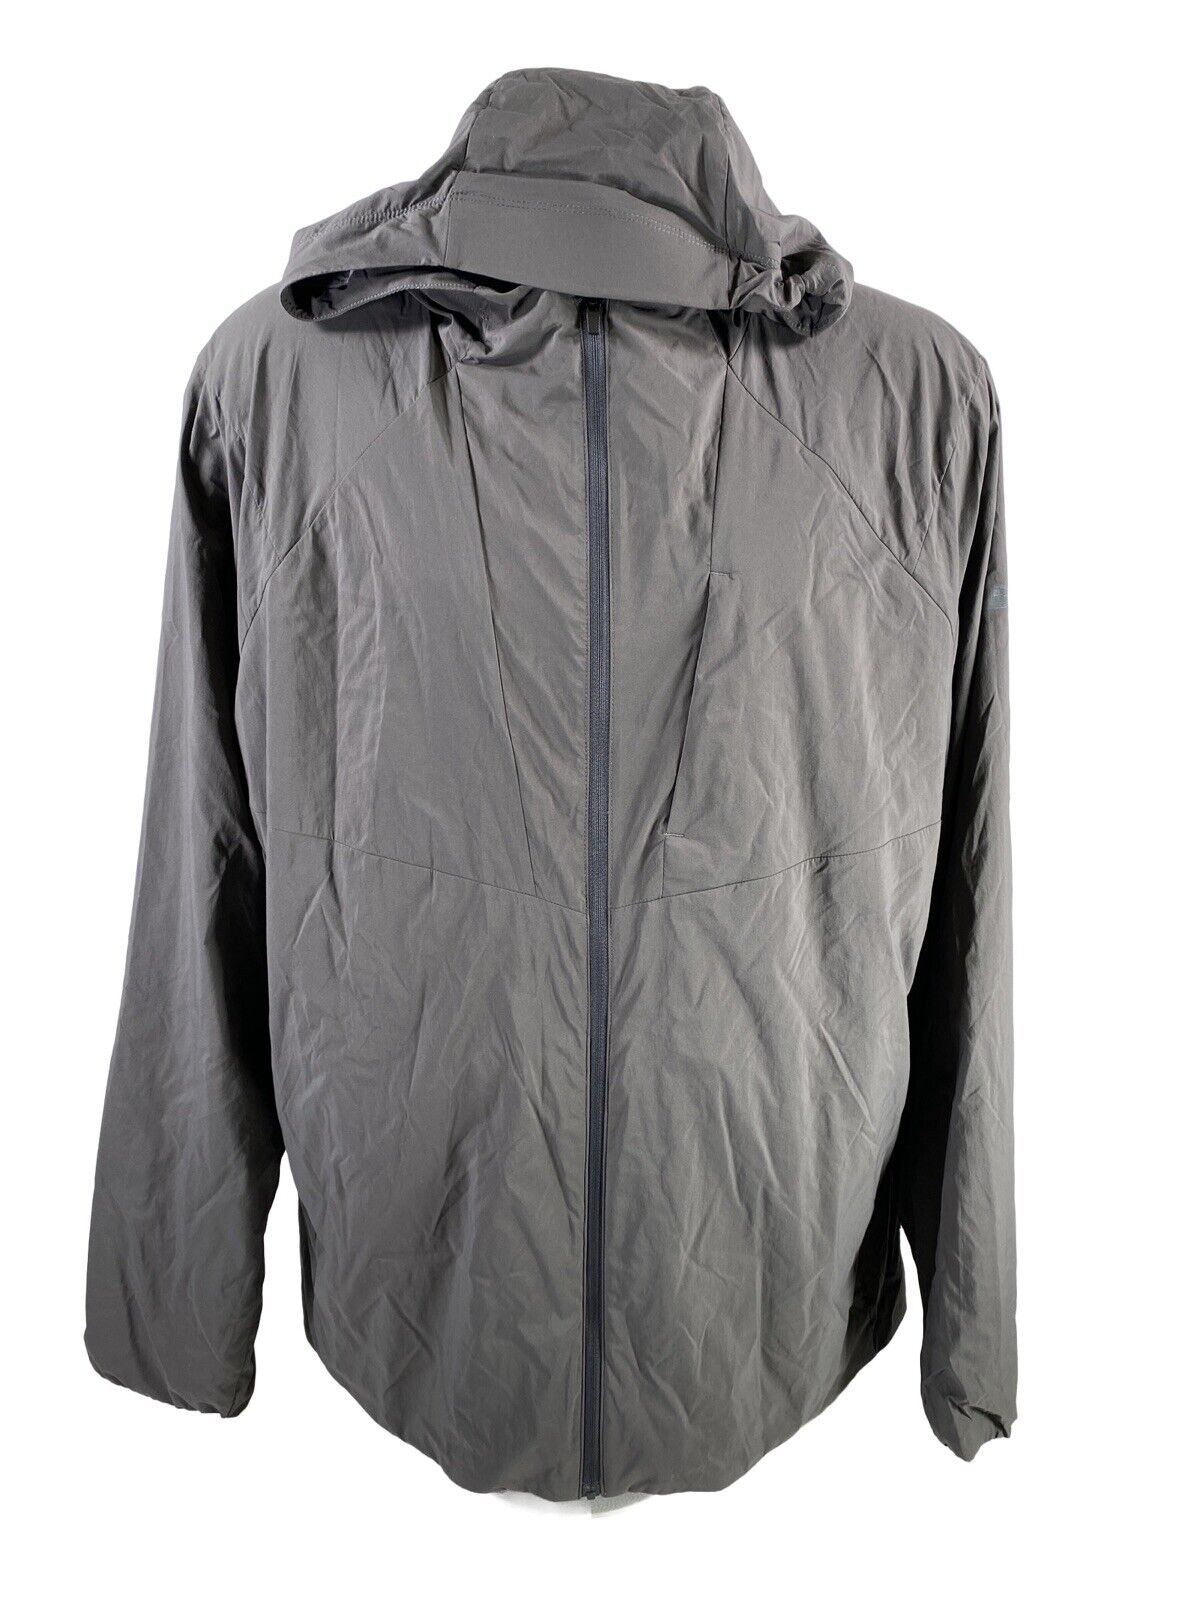 NUEVA chaqueta cortavientos con capucha Icebreaker Tropos gris para hombre - XL